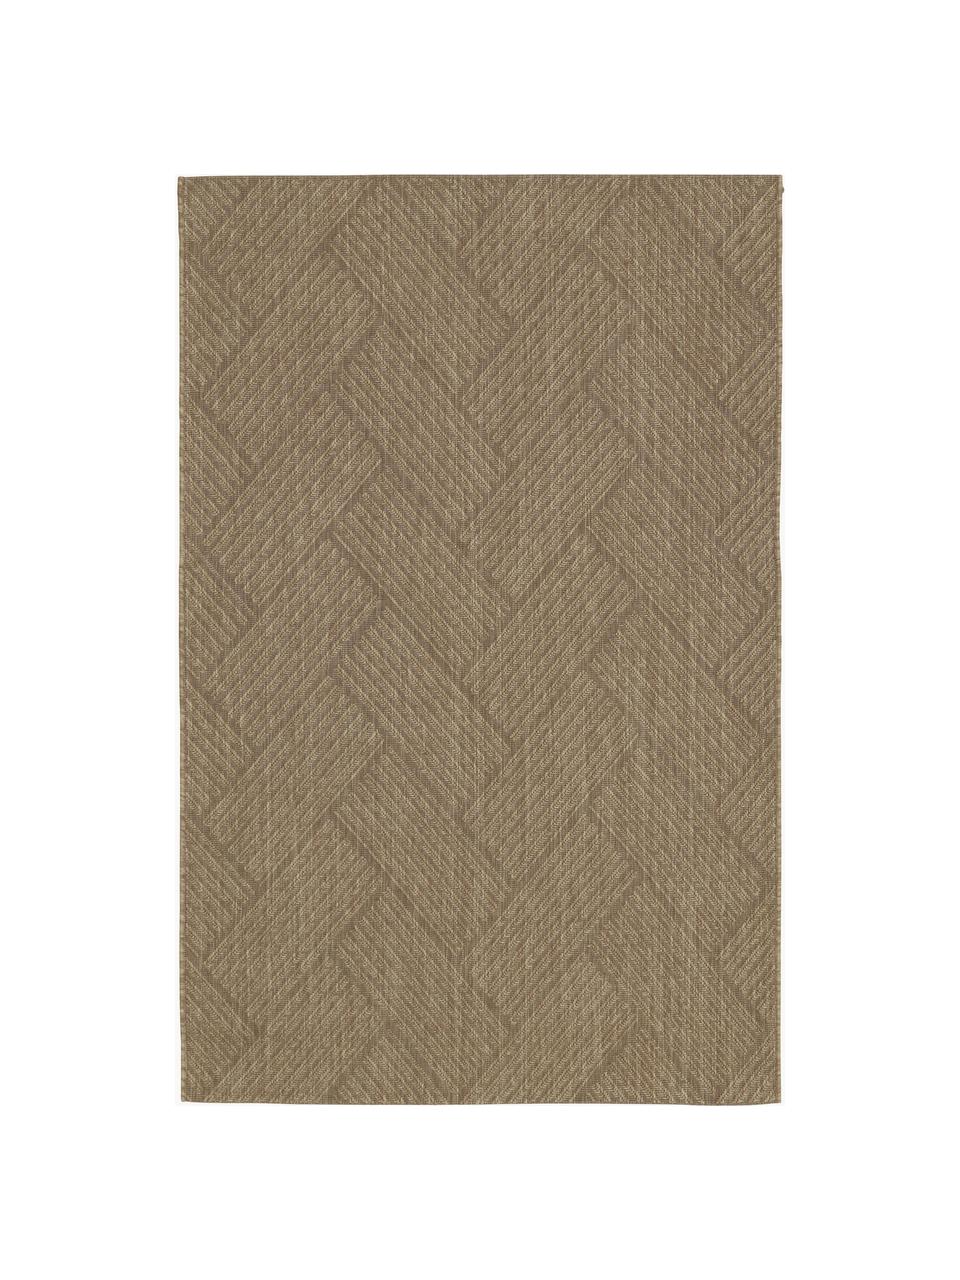 In- & Outdoor-Teppich Ory, 100% Polypropylen, Braun, B 120 x L 180 cm (Grösse S)